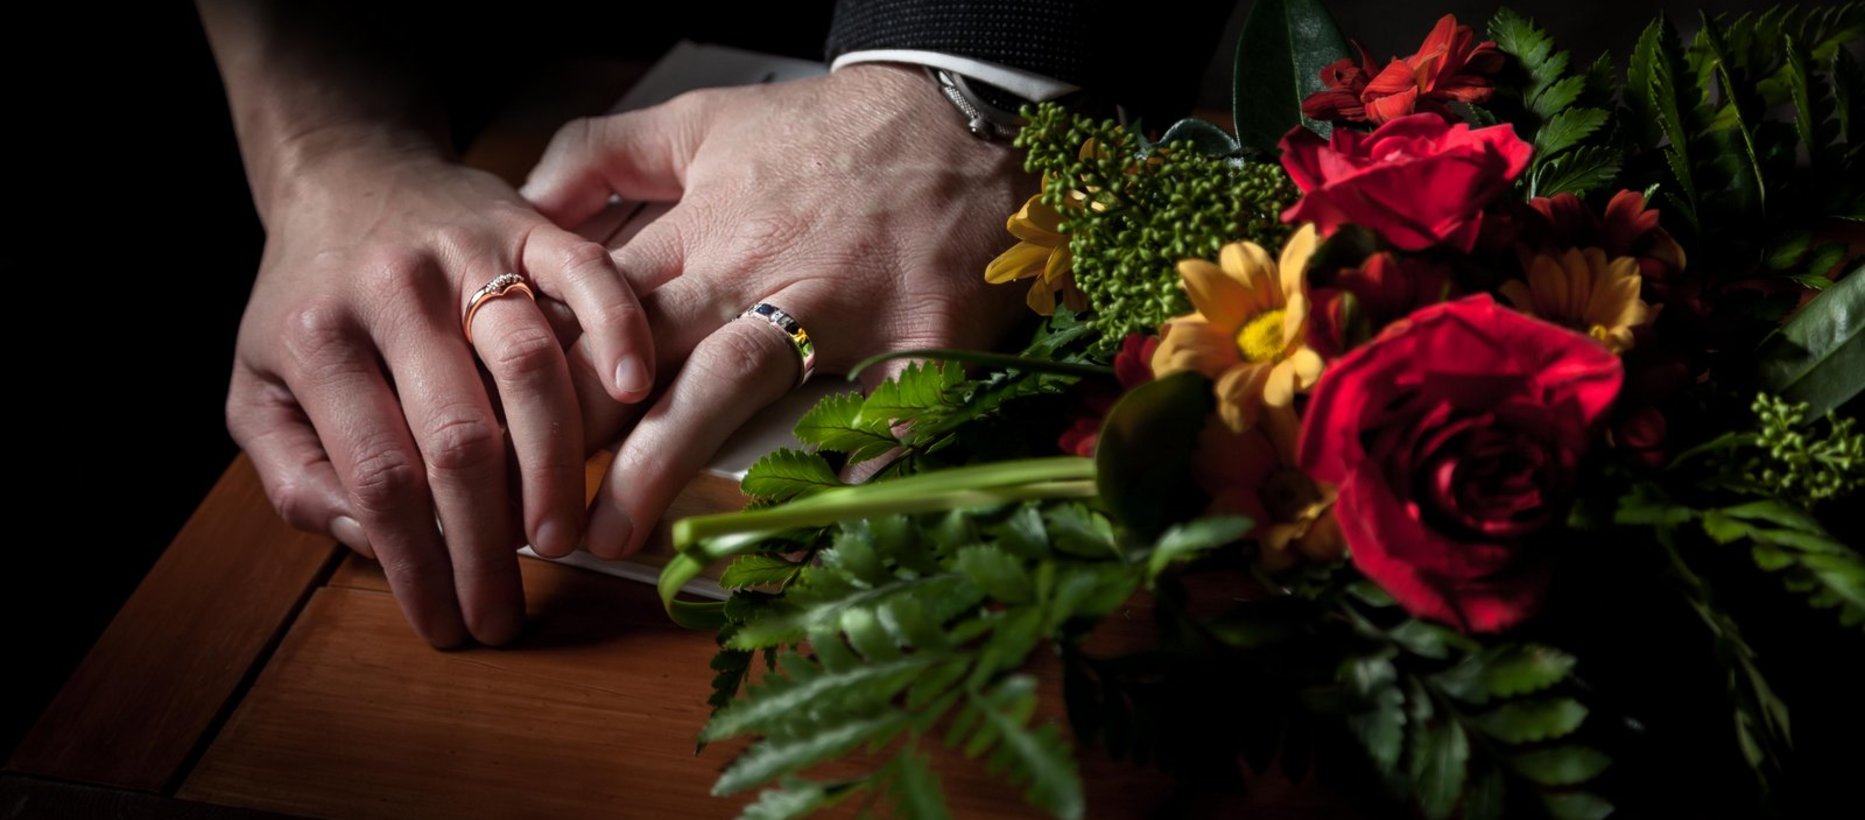 Hääpari pitää toisiaan kädestä kiinni sormukset sormissaan. Etualalla myös kukkia.